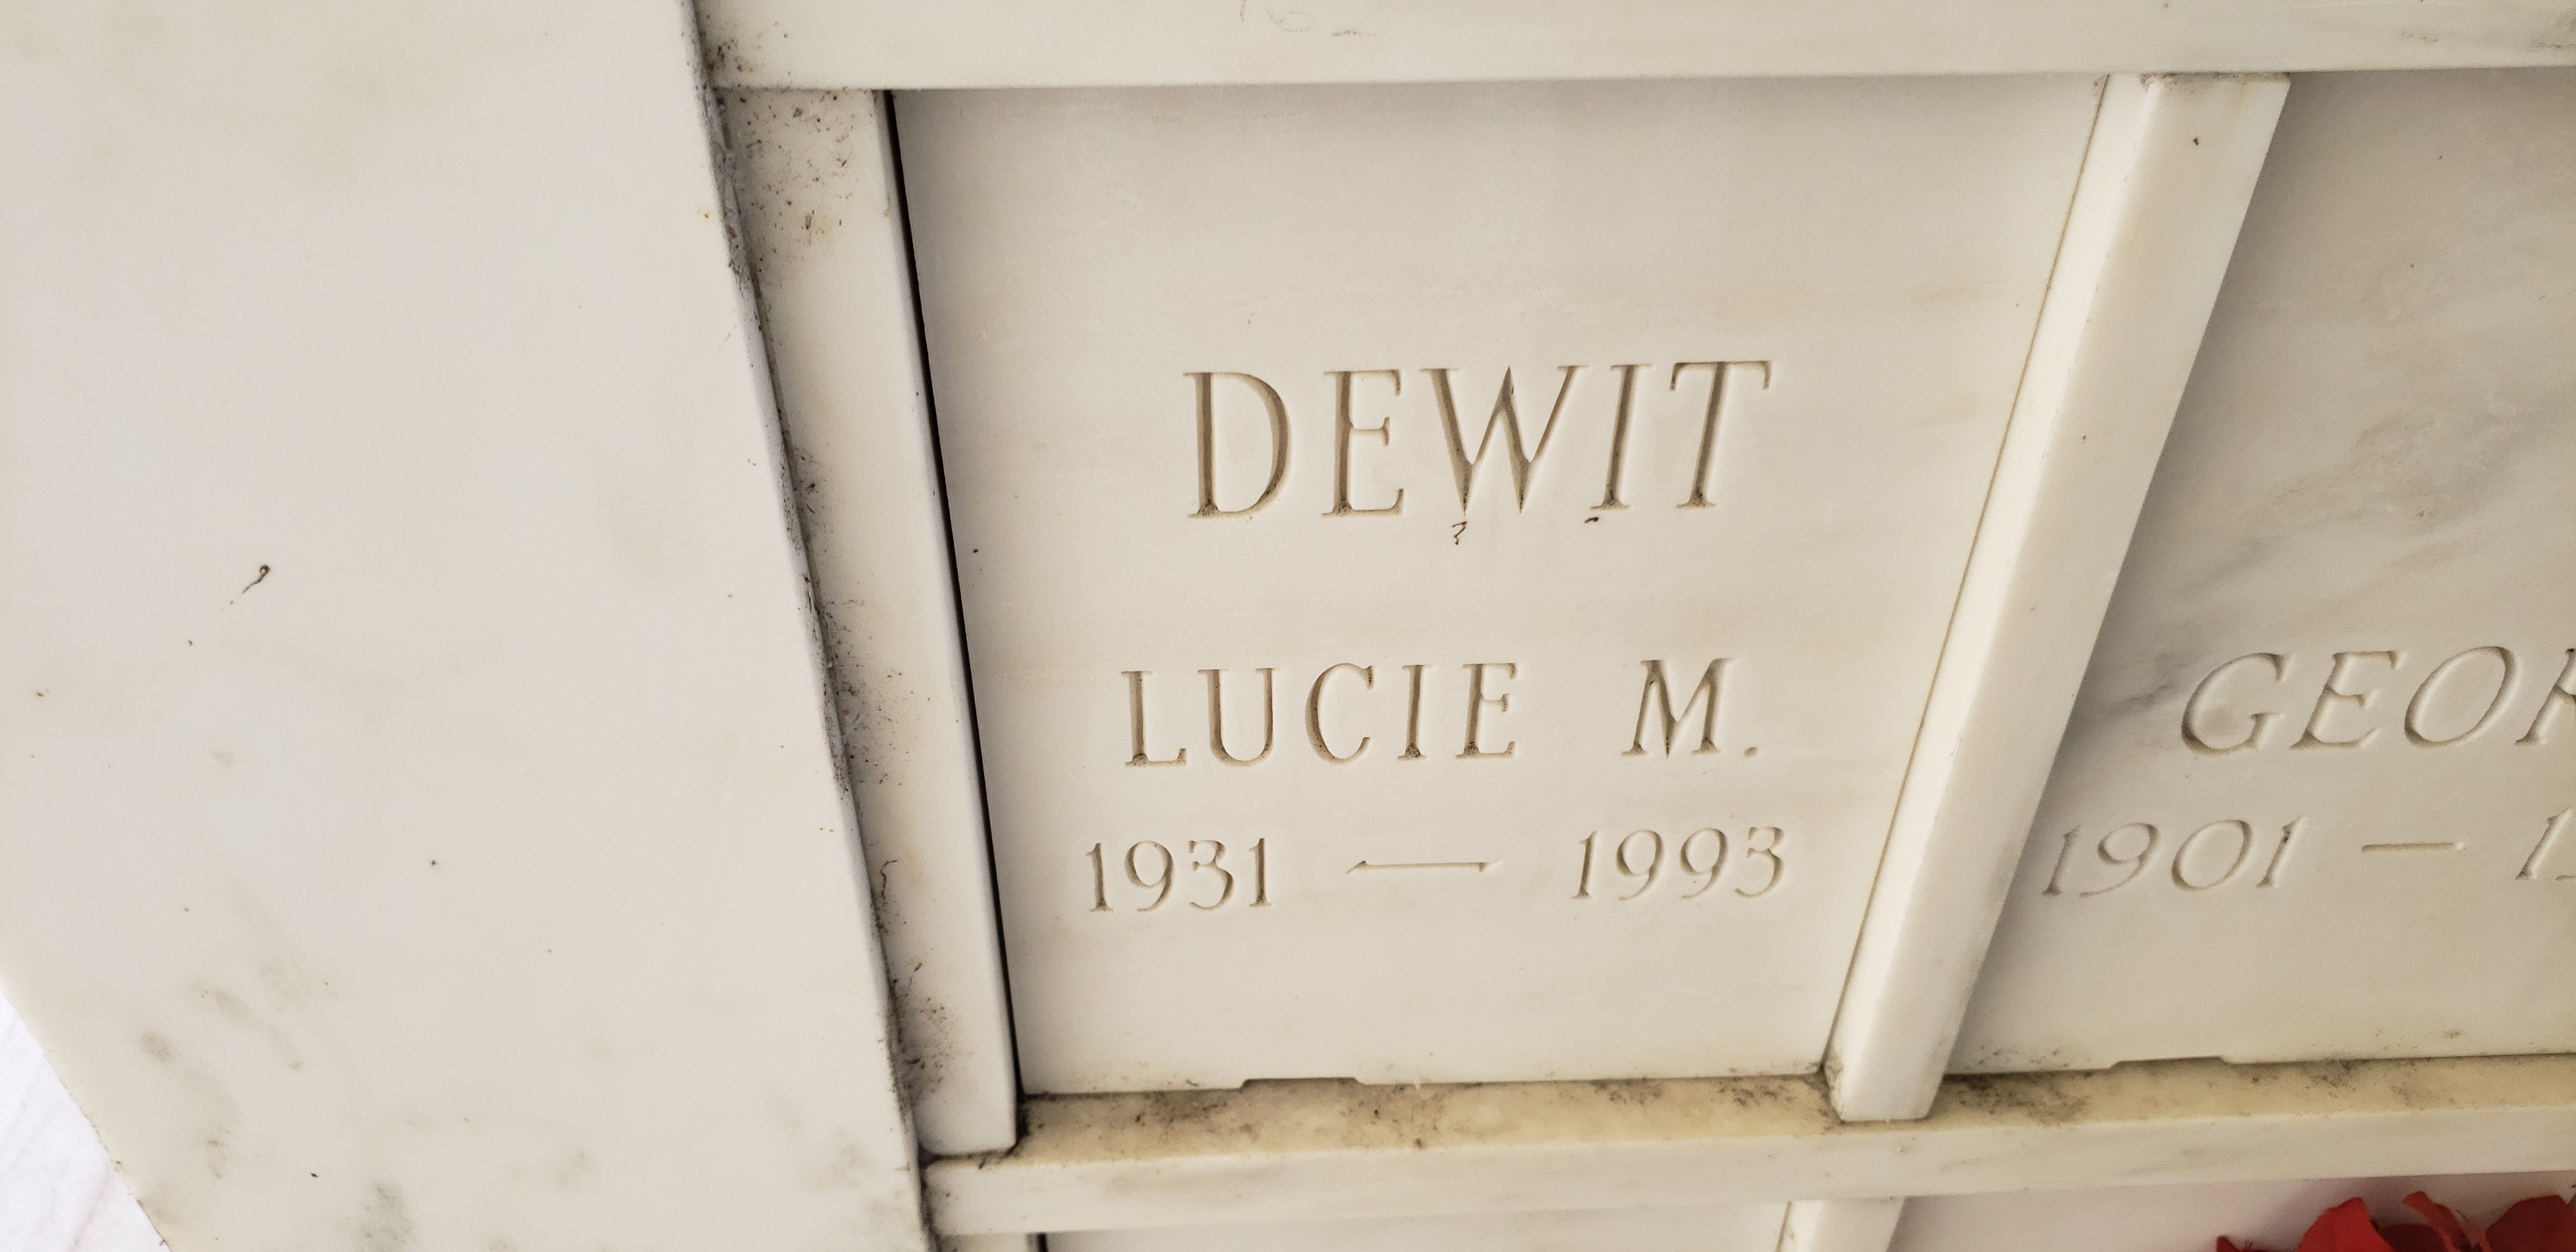 Lucie M Dewit